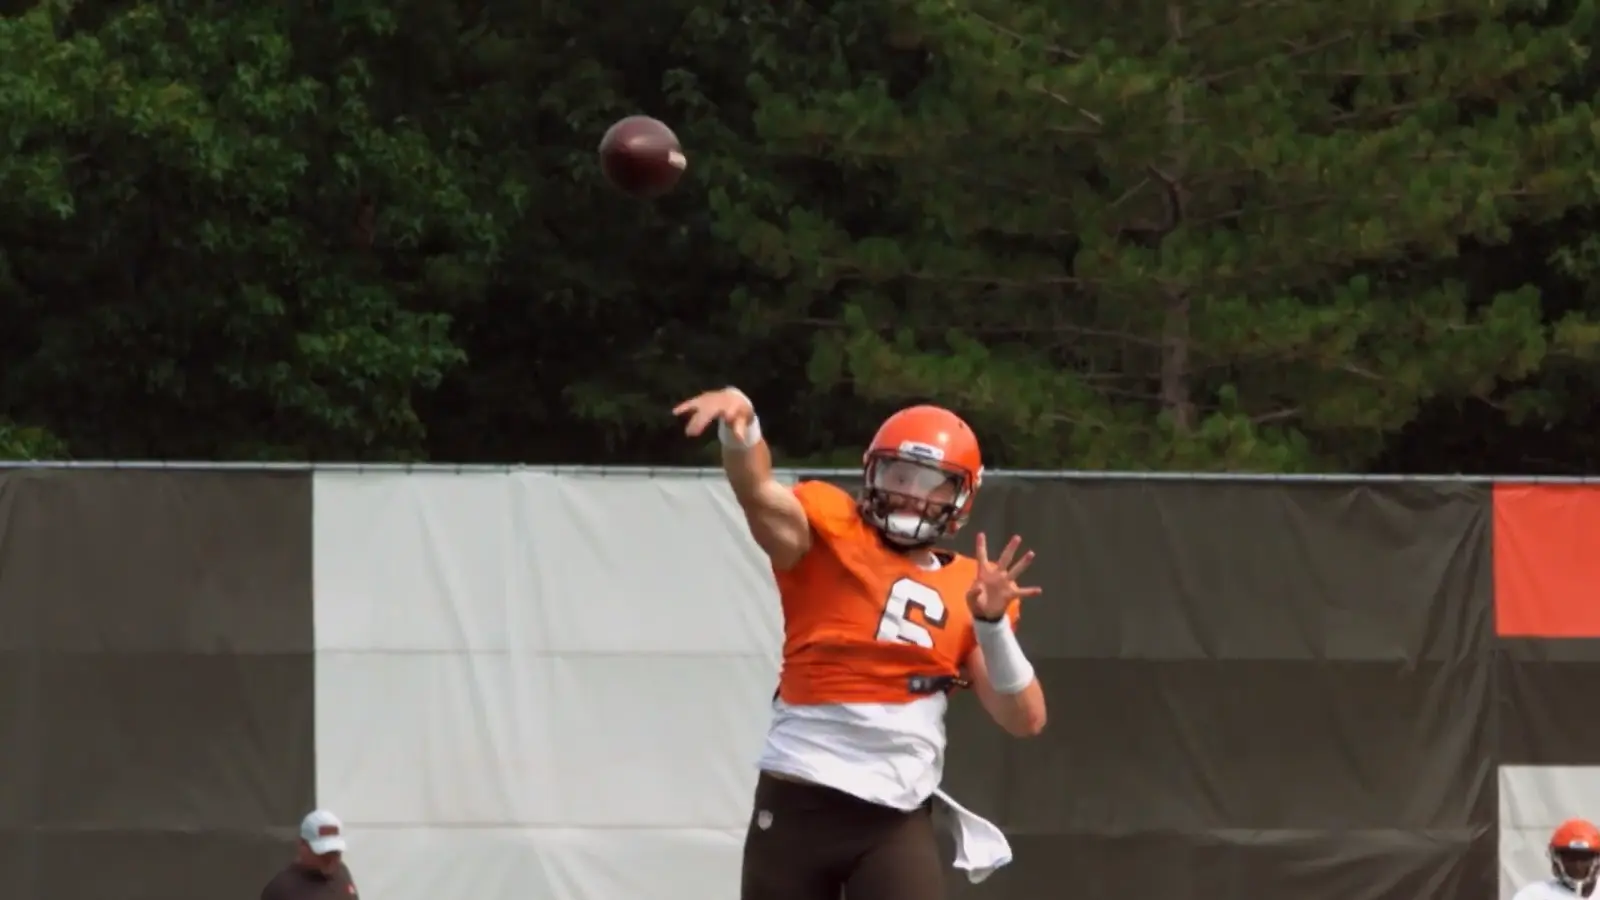 A quarterback releasing a football